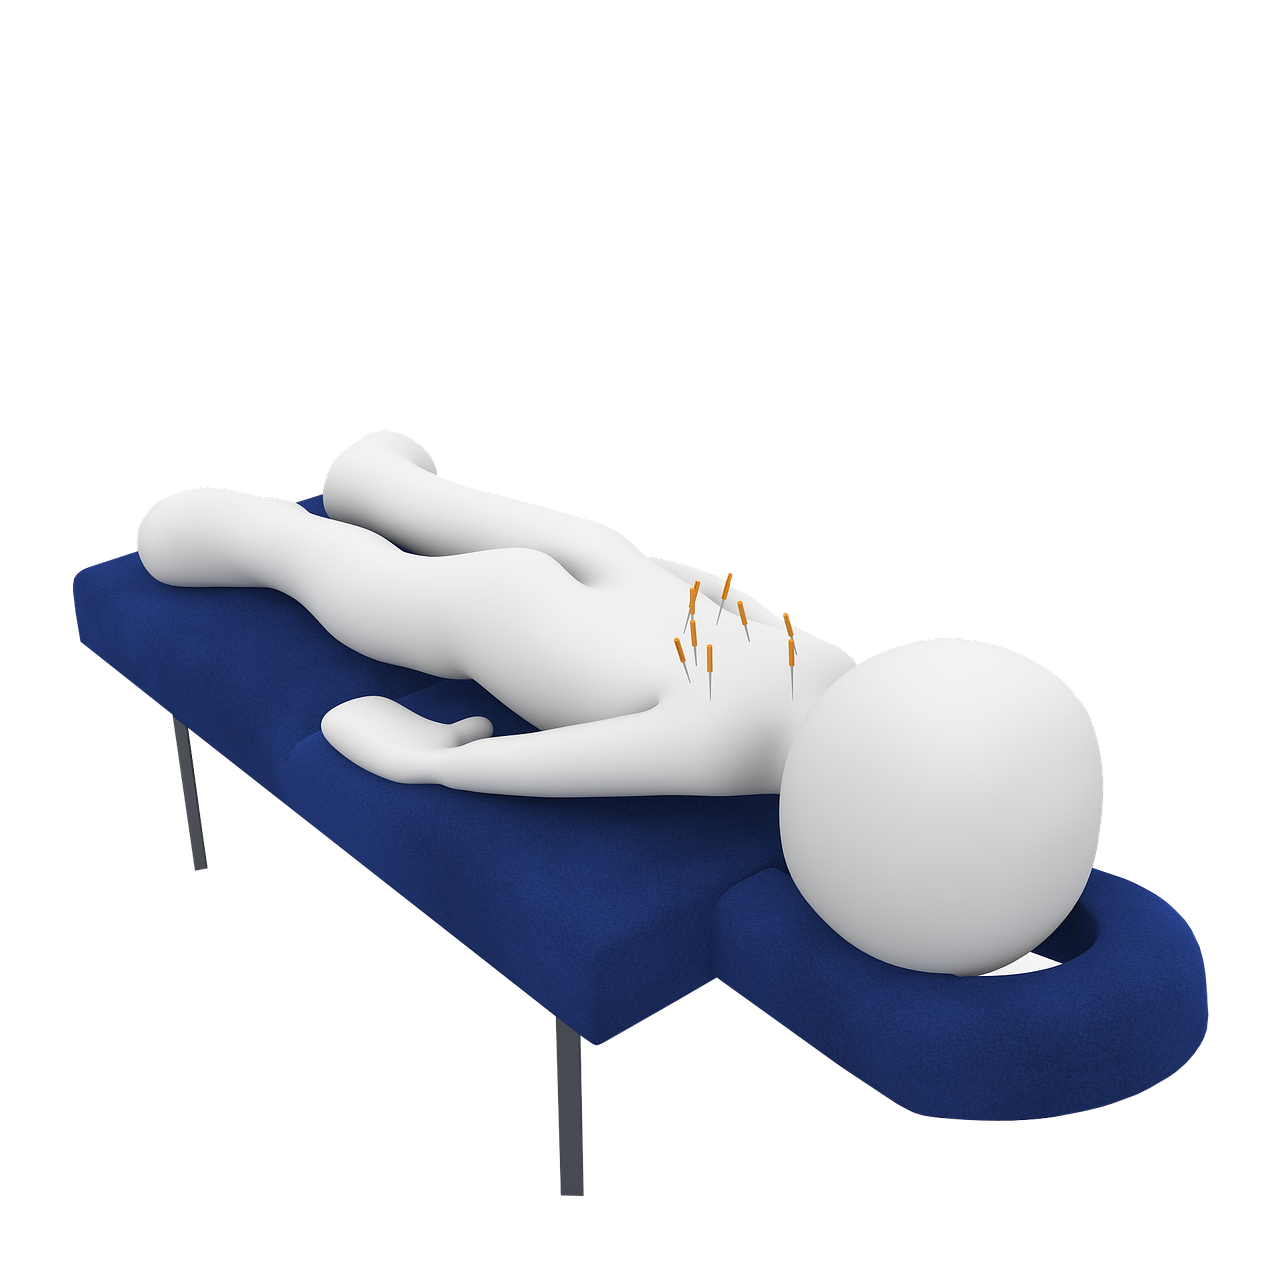 Salum Praktijk voor Integrale Lichaamsmassage dry needling